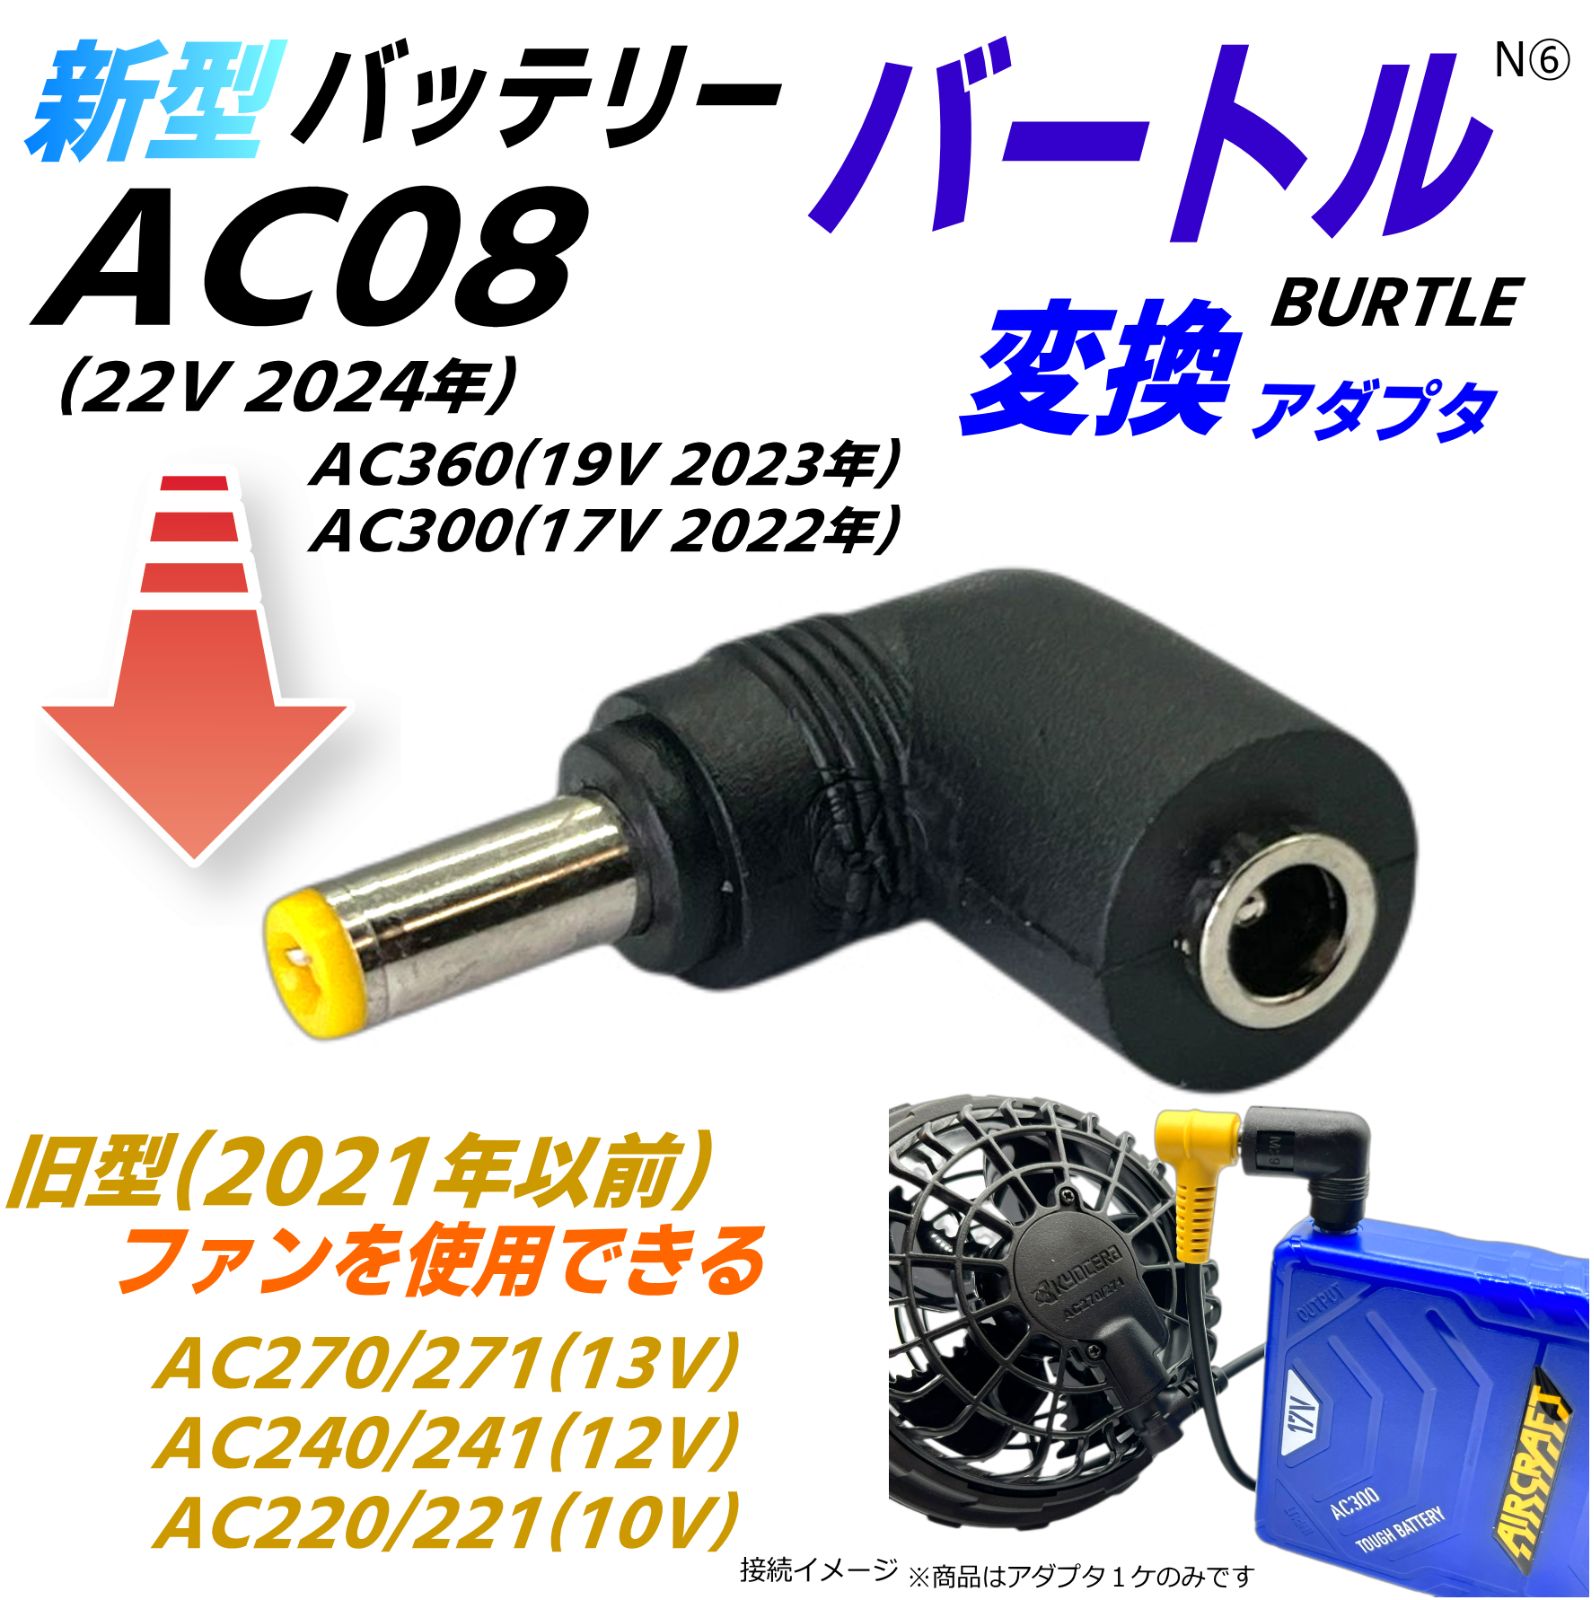 バートル(BURTLE)空調服 バッテリー 新型AC08(22v) AC360(19v) AC300(17v)で旧型ファン AC270 AC240  AC220などを動作させるアダプタN⑥ - メルカリ